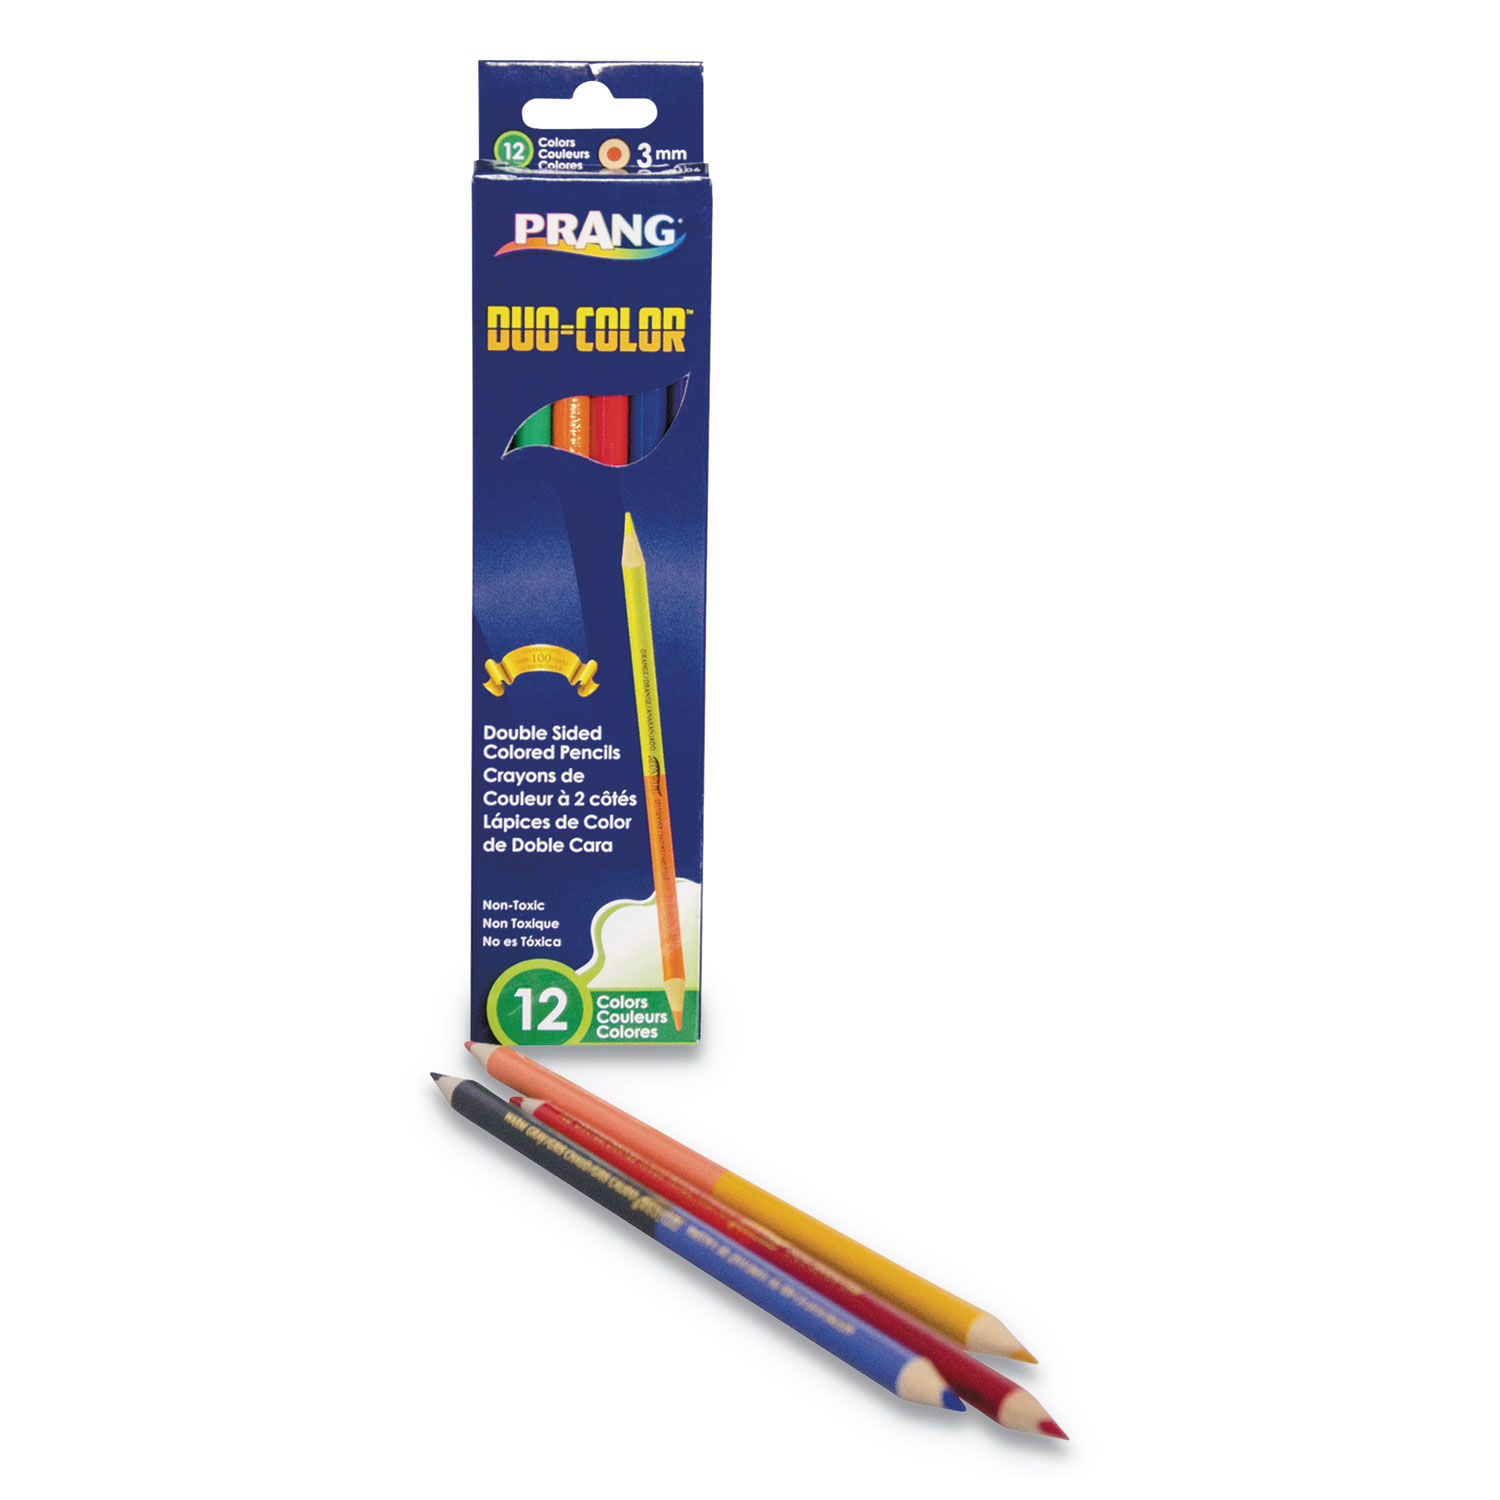  Prang 22106 Duo-Color Colored Pencil Sets, 3 mm, Assorted Lead/Barrel Colors, 6/Pack (DIX22106) 